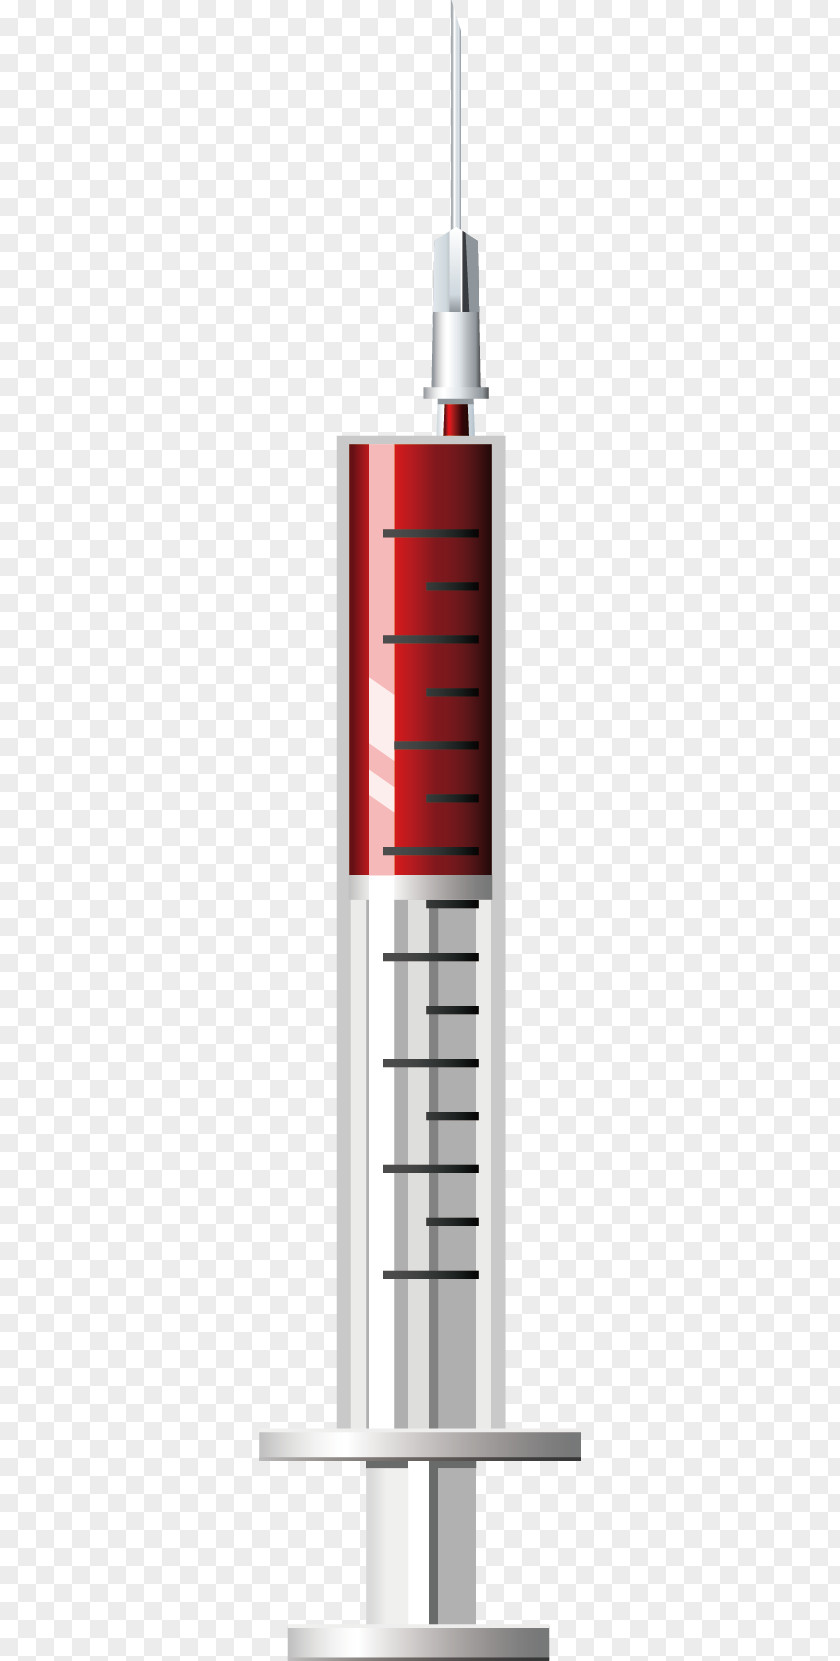 Red Syringes Syringe Hypodermic Needle Medical Equipment Medicine Clip Art PNG